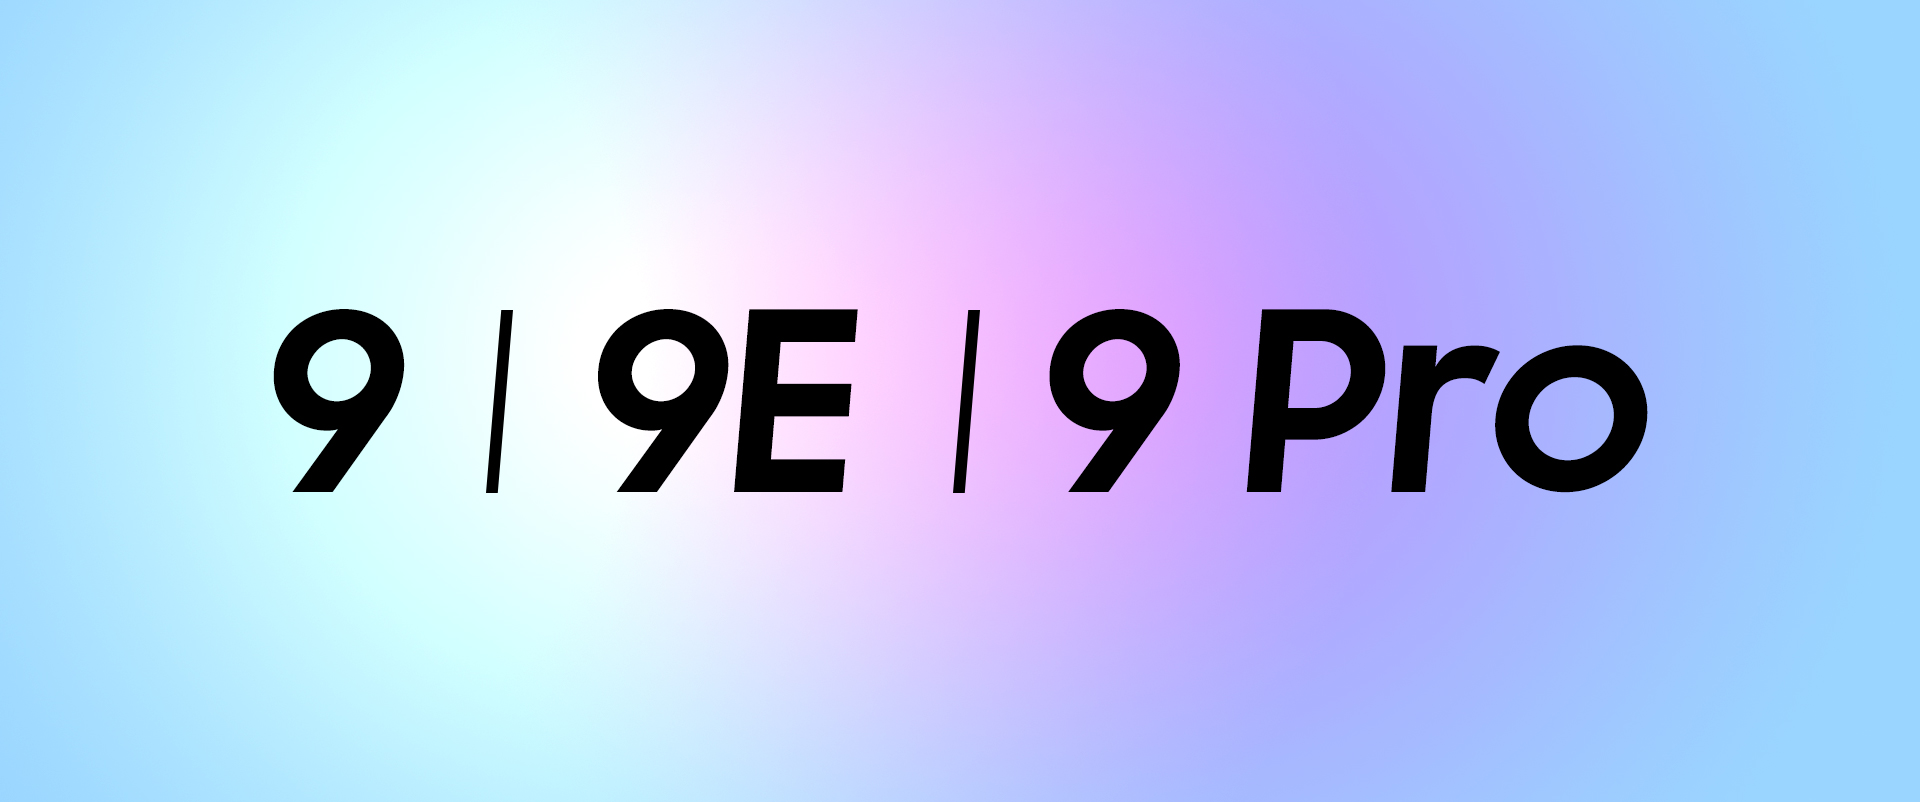 OnePlus 9E OnePlus 9 Pro